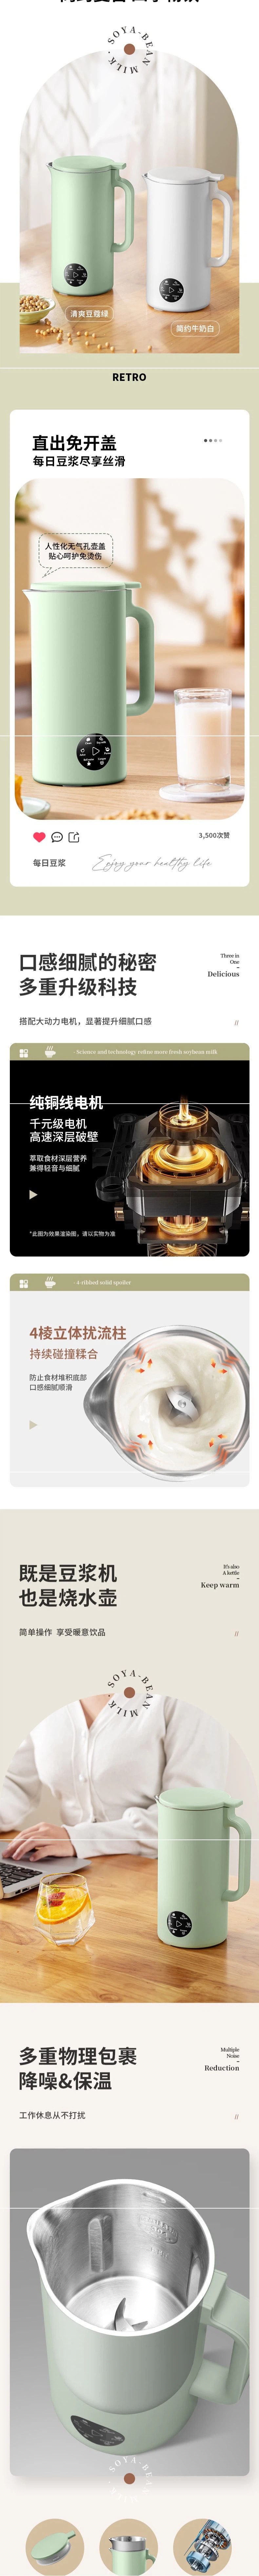 【中国直邮】豆浆机 350ml 全自动多功能免过滤便携式破壁机 白色 110V